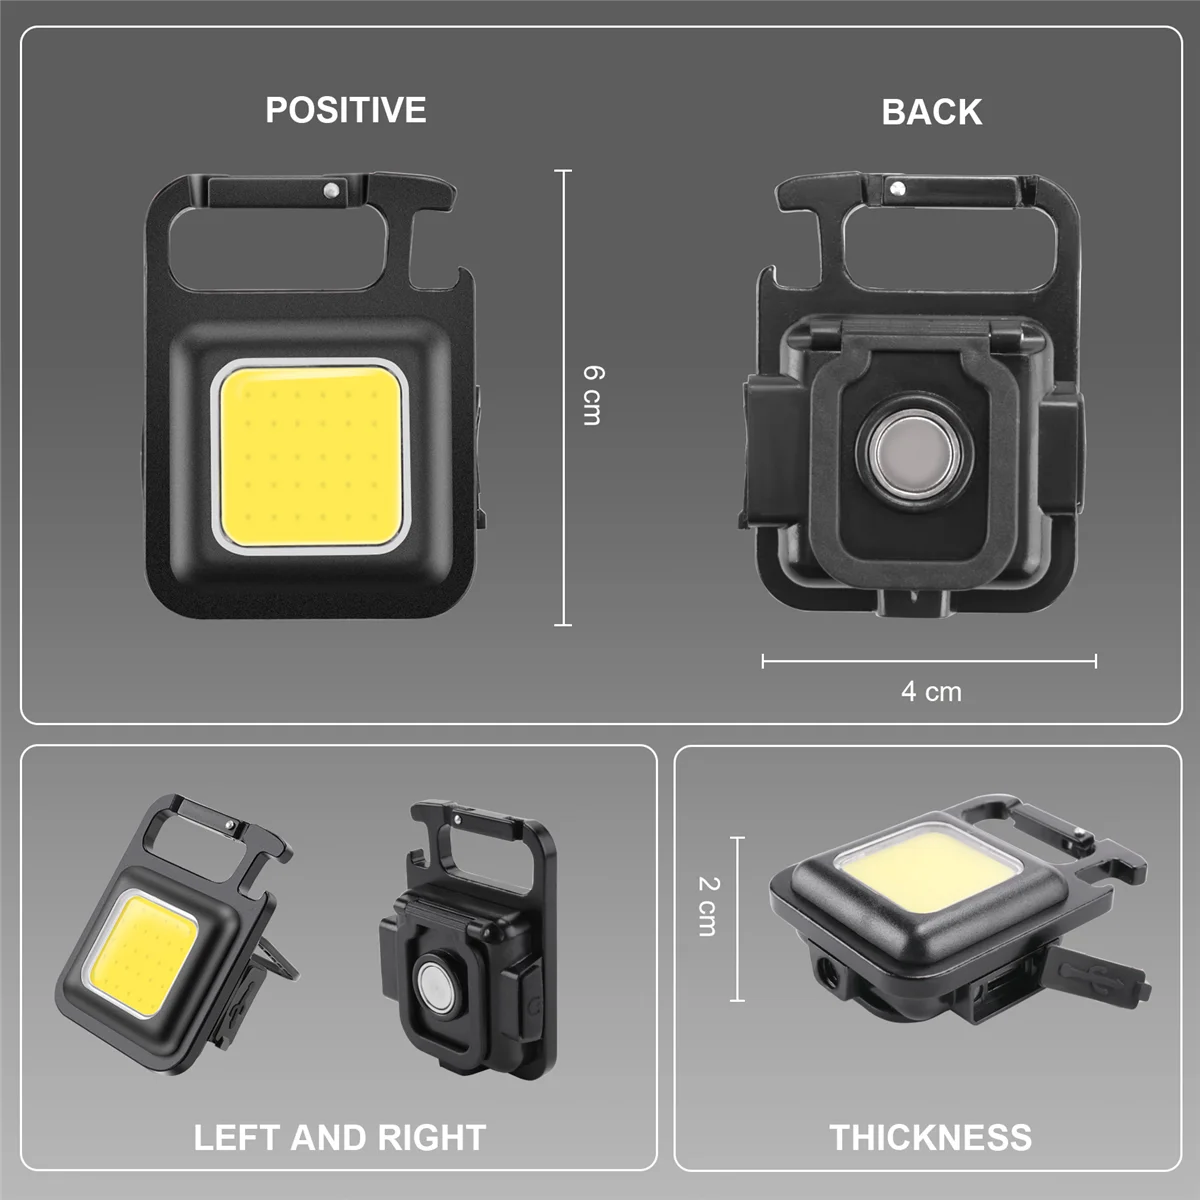 3шт Мини-светодиодный фонарик, портативный USB-аккумуляторный рабочий фонарь, яркий брелок для ключей, маленькие карманные фонарики для улицы